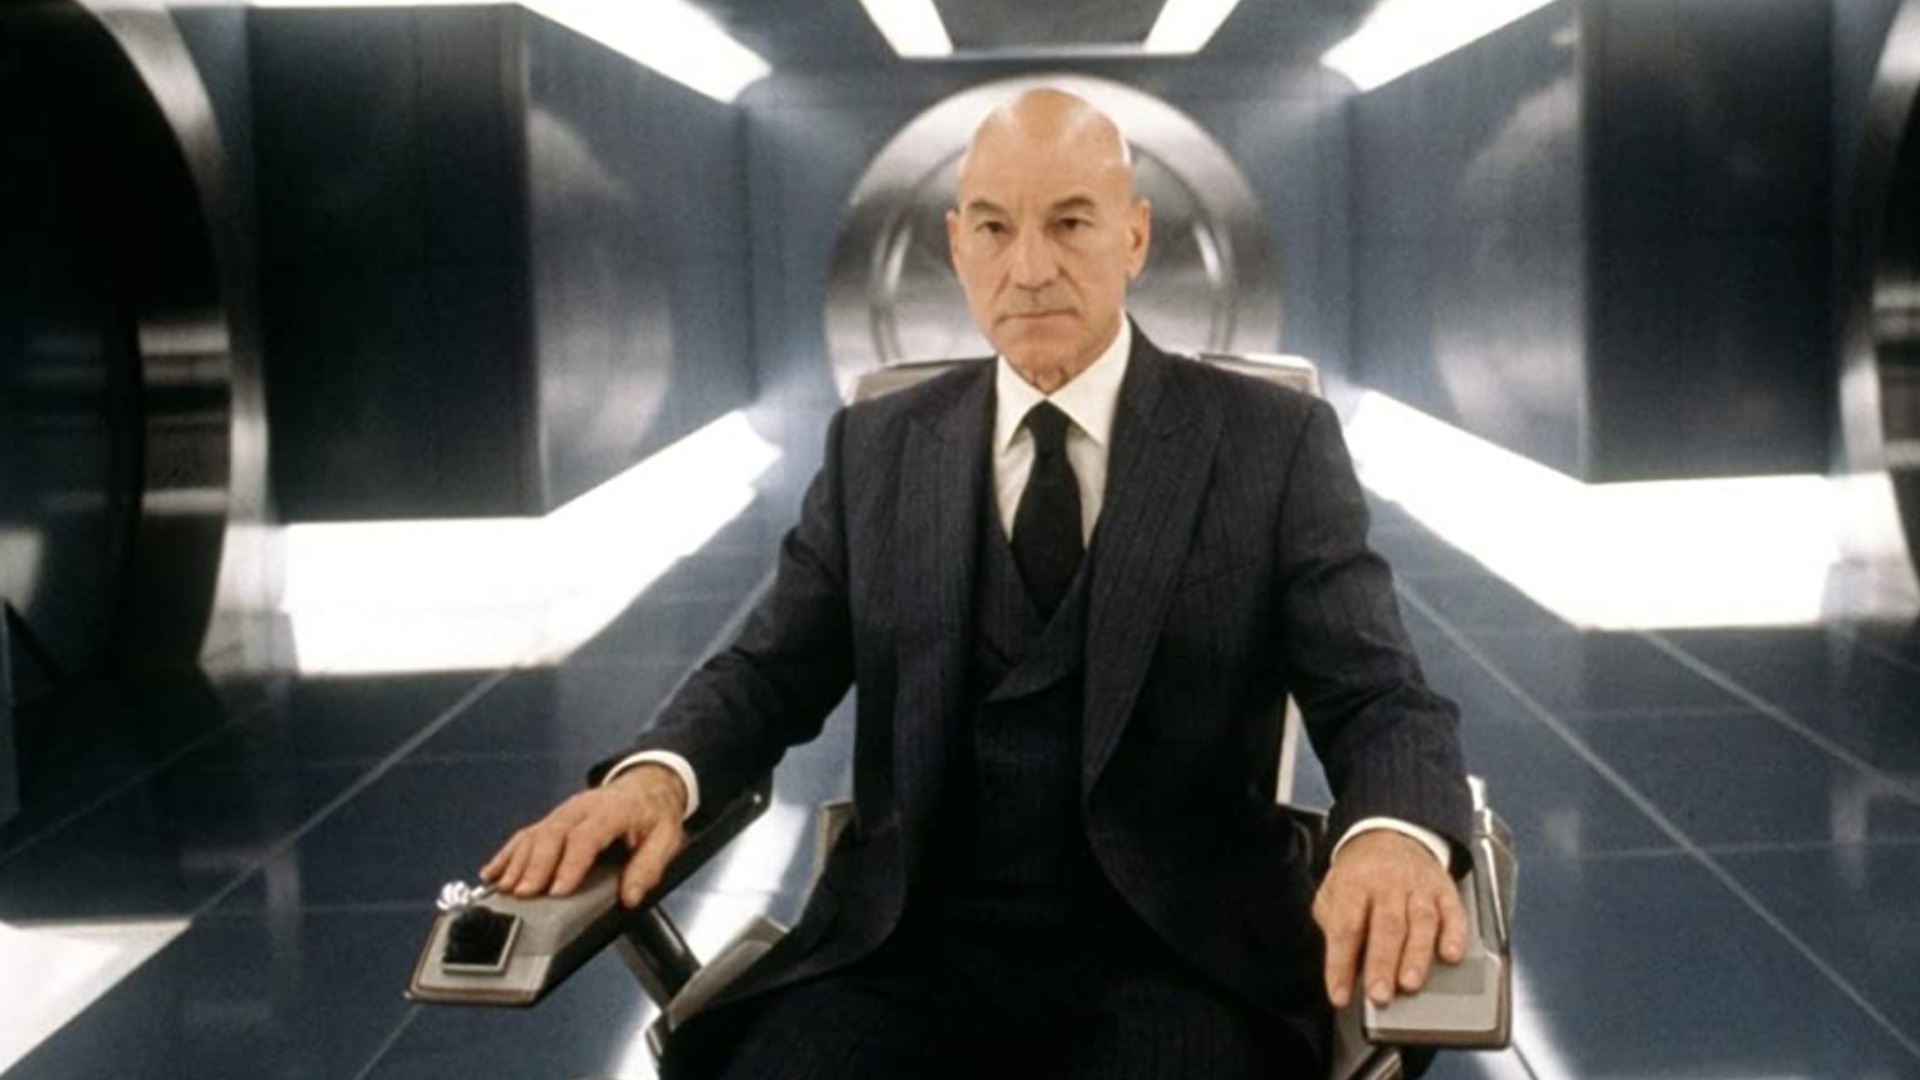 Il Professor X siede sulla sua sedia nel cuore del complesso degli X-Men nel film di supereroi del 2000